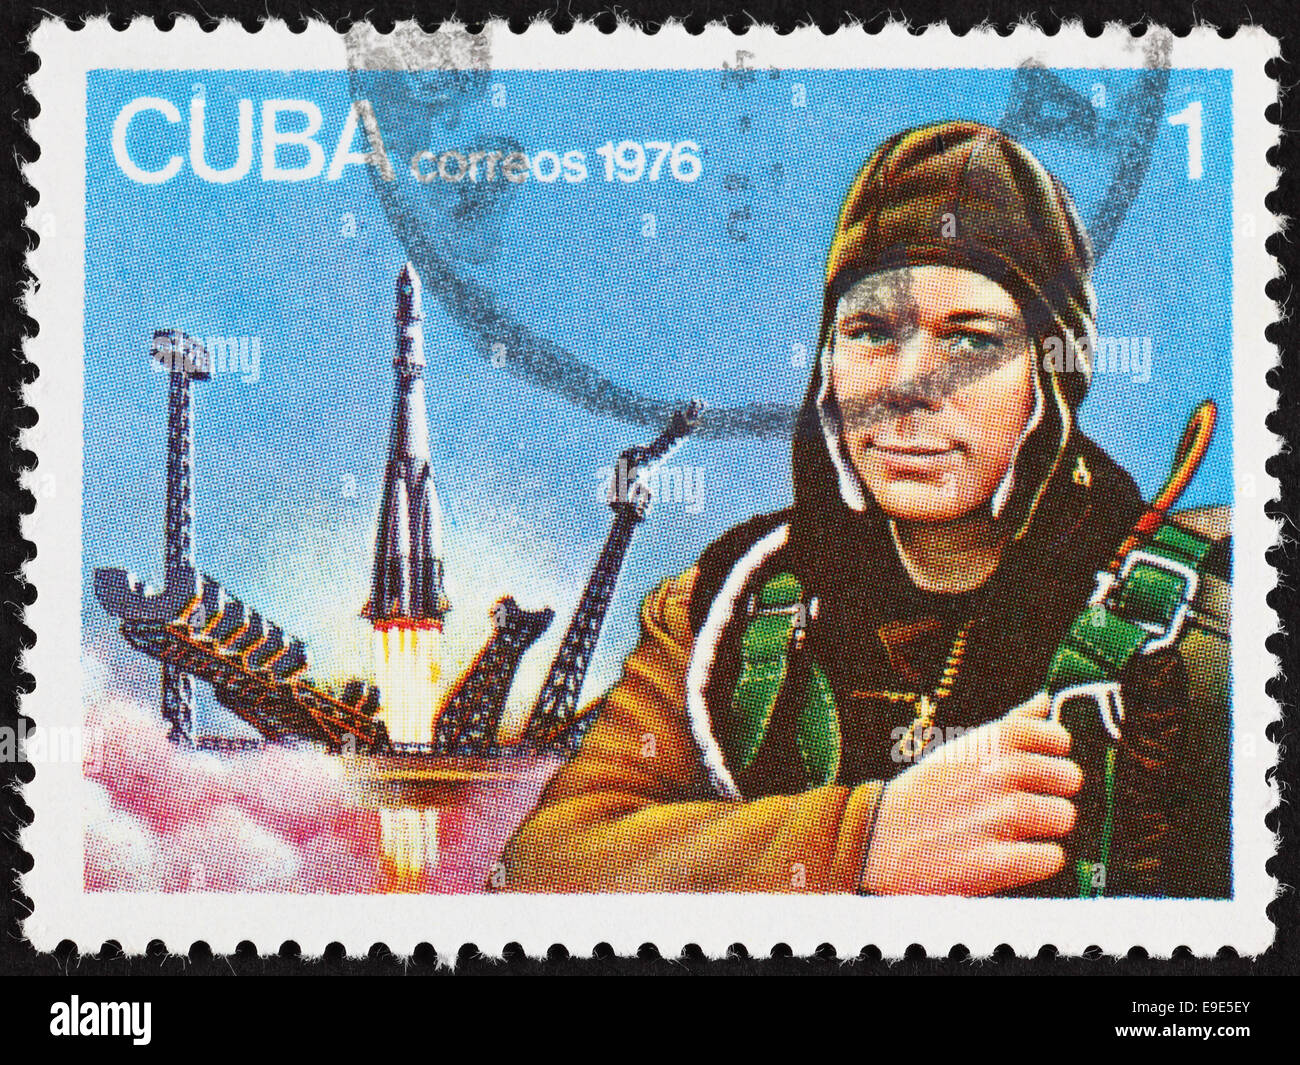 Cuba correos postage stamp Yuri Gagarin. 1976 year. Stock Photo